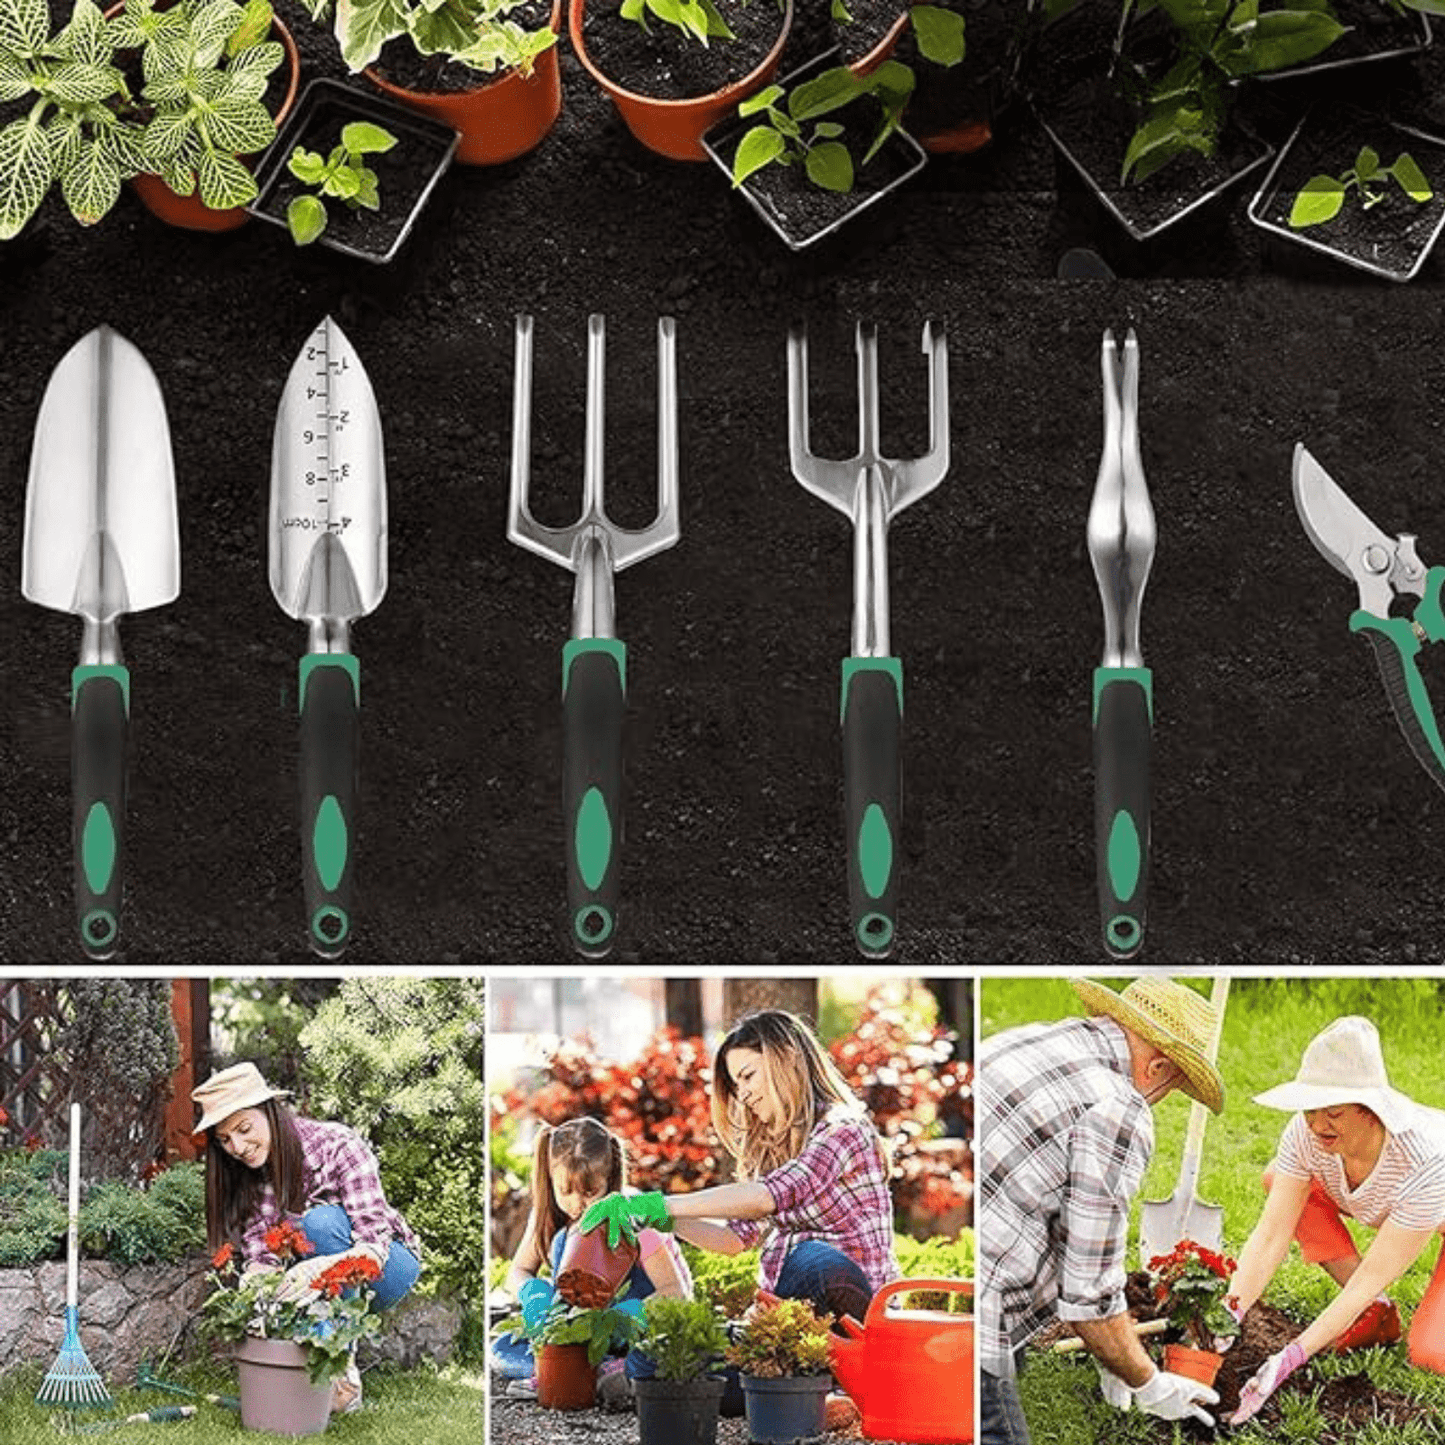 Kompletny profesjonalny zestaw ogrodniczy - 11 narzędzi